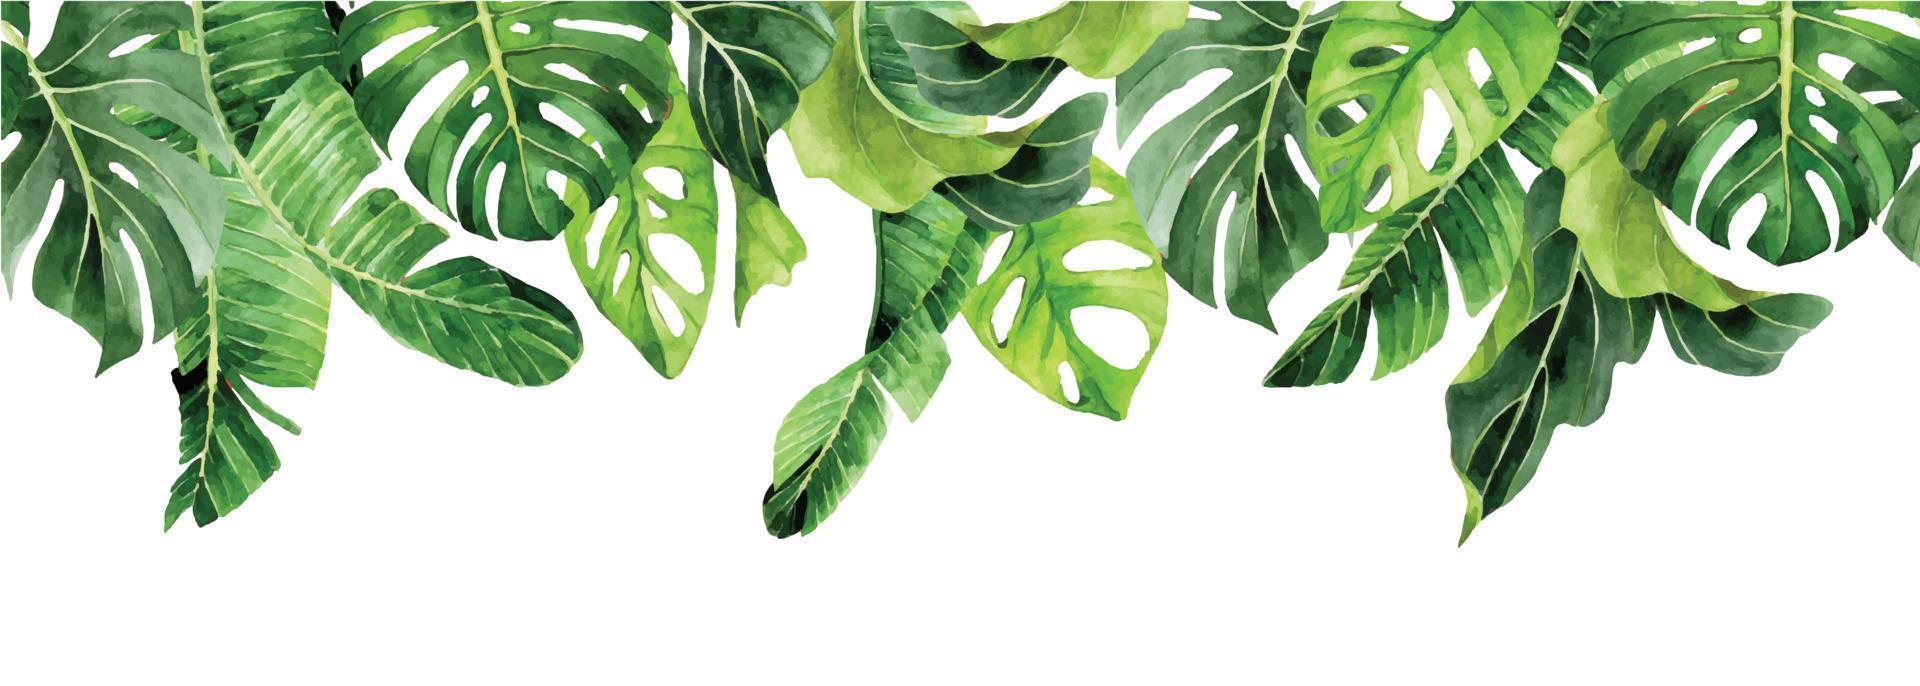 Aquarell nahtlose Grenze, tropische Blätter Banner. grüne blätter von palmen, monstera, banane. rahmen vektor